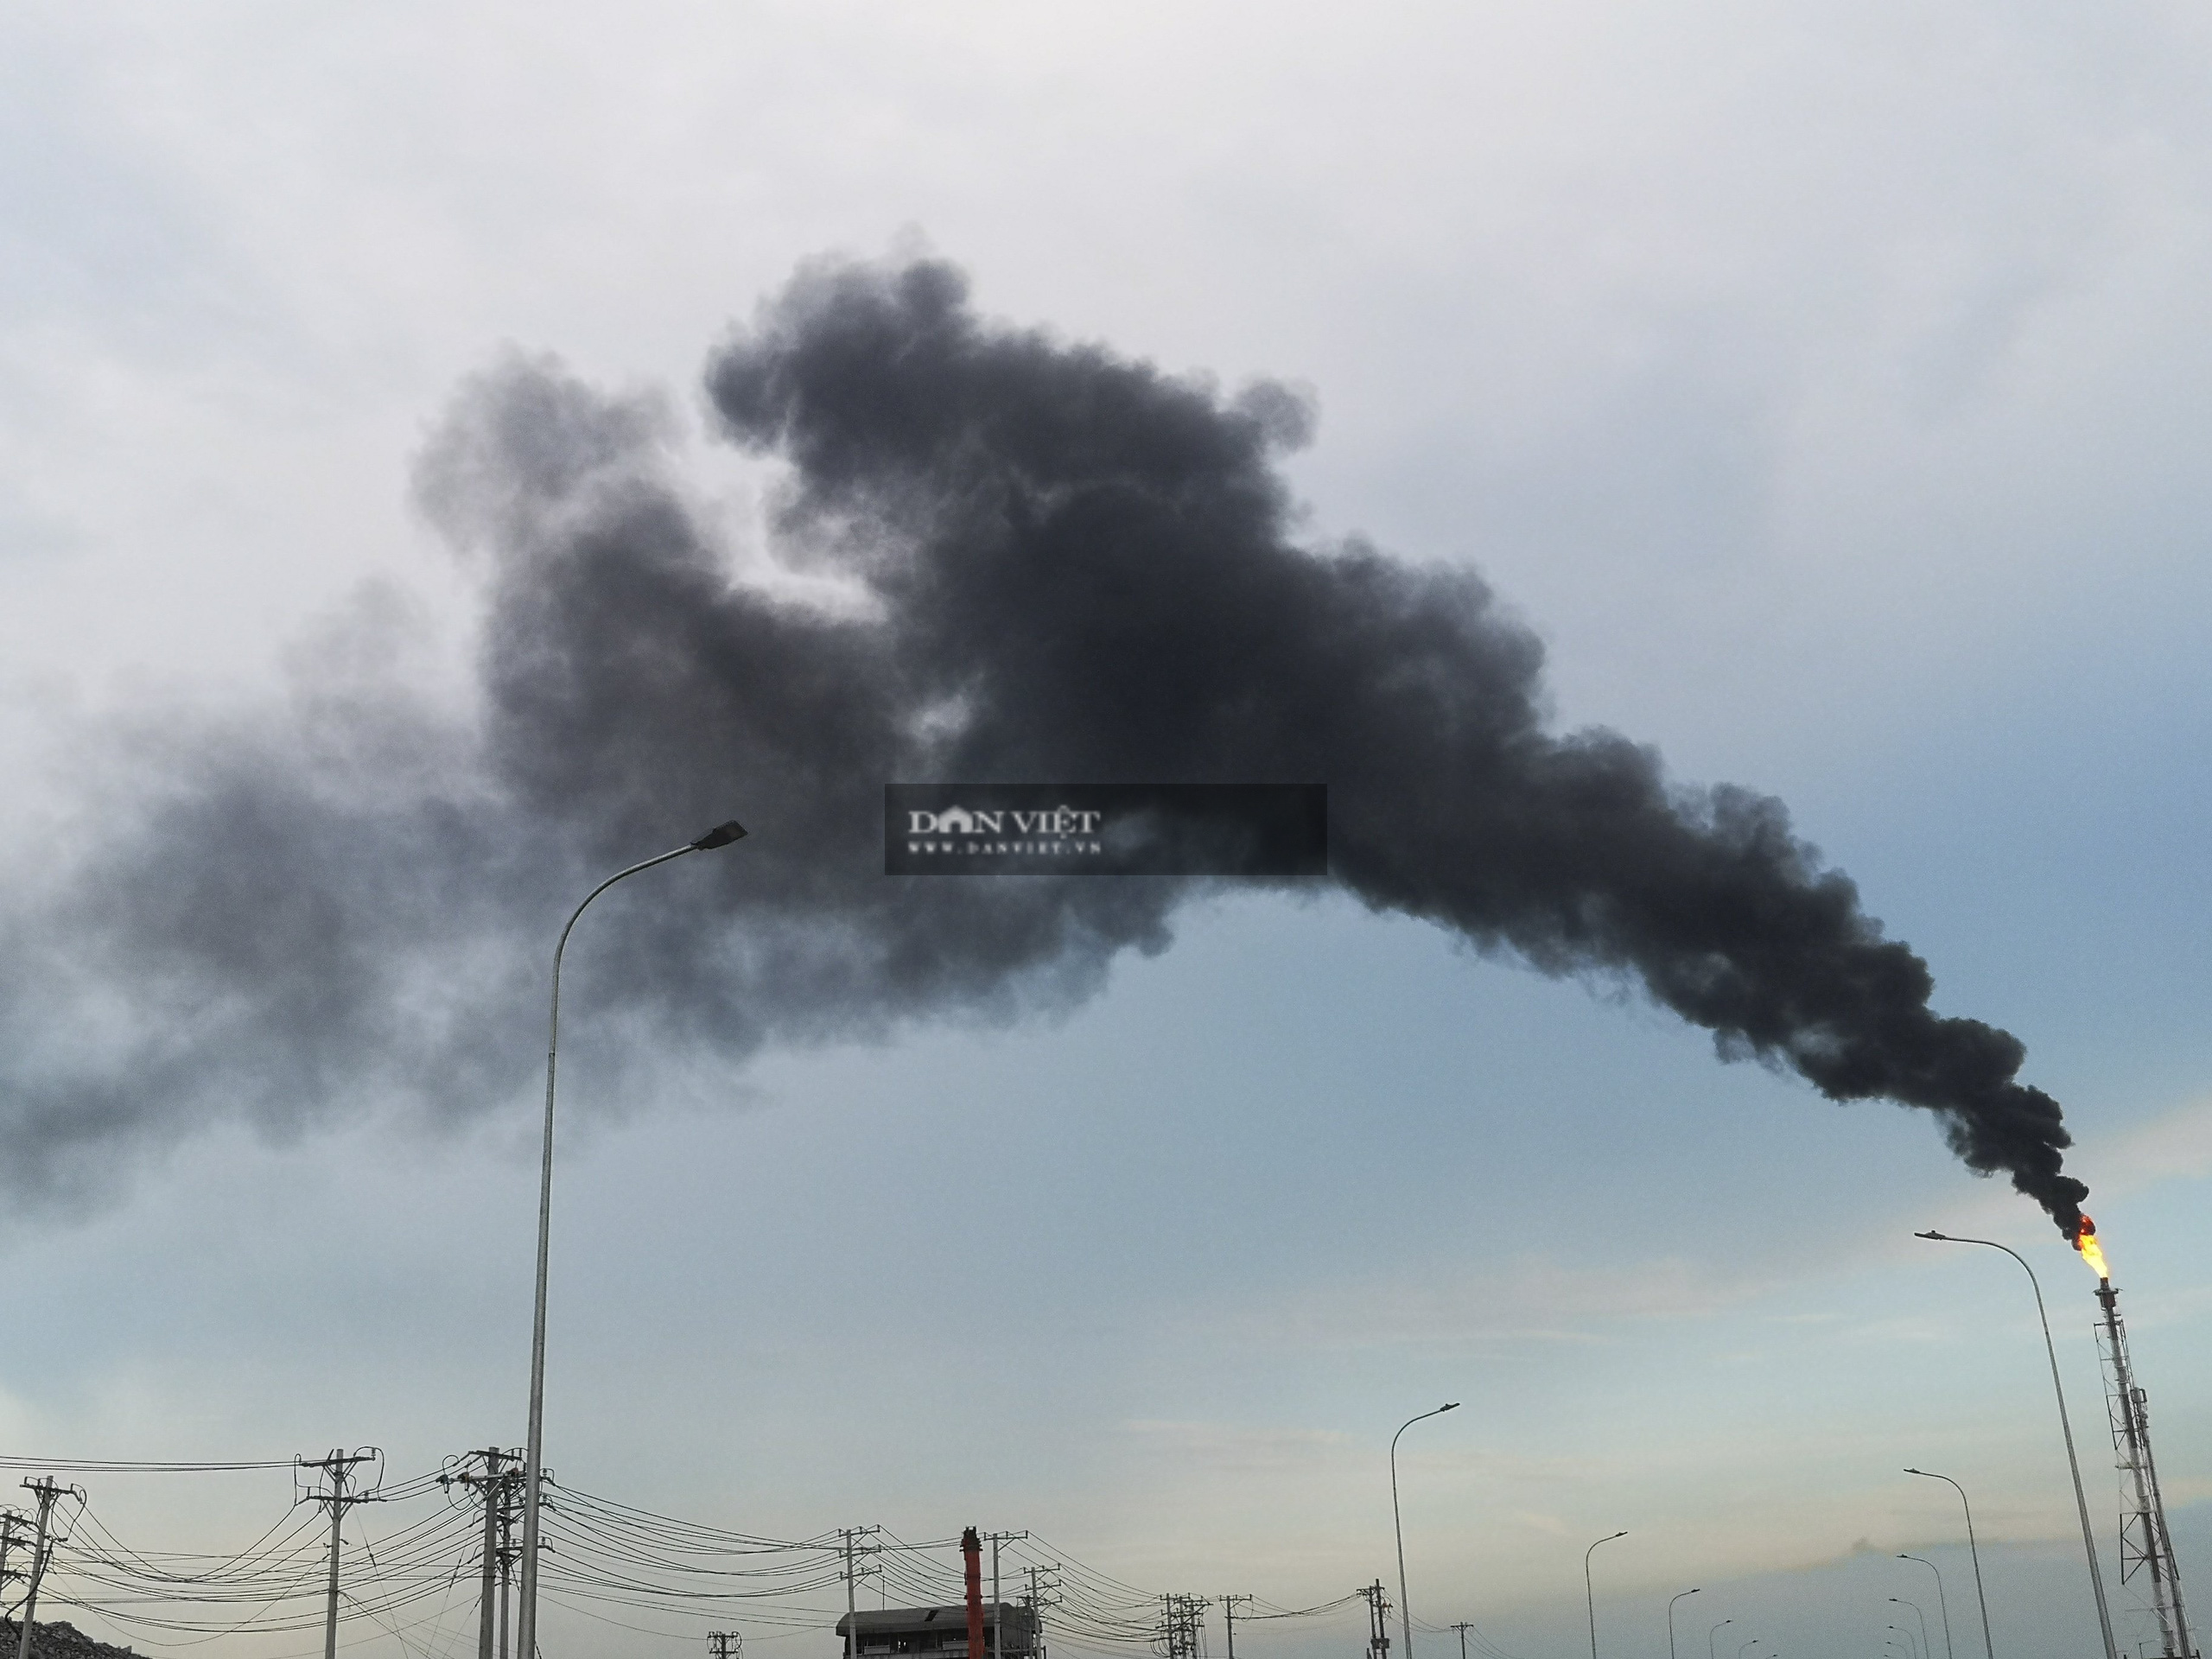 Bà Rịa – Vũng Tàu: Công ty Hóa Chất  Hyosung Vina xuất hiện cột khói đen “khủng” trùm kín bầu trời - Ảnh 2.